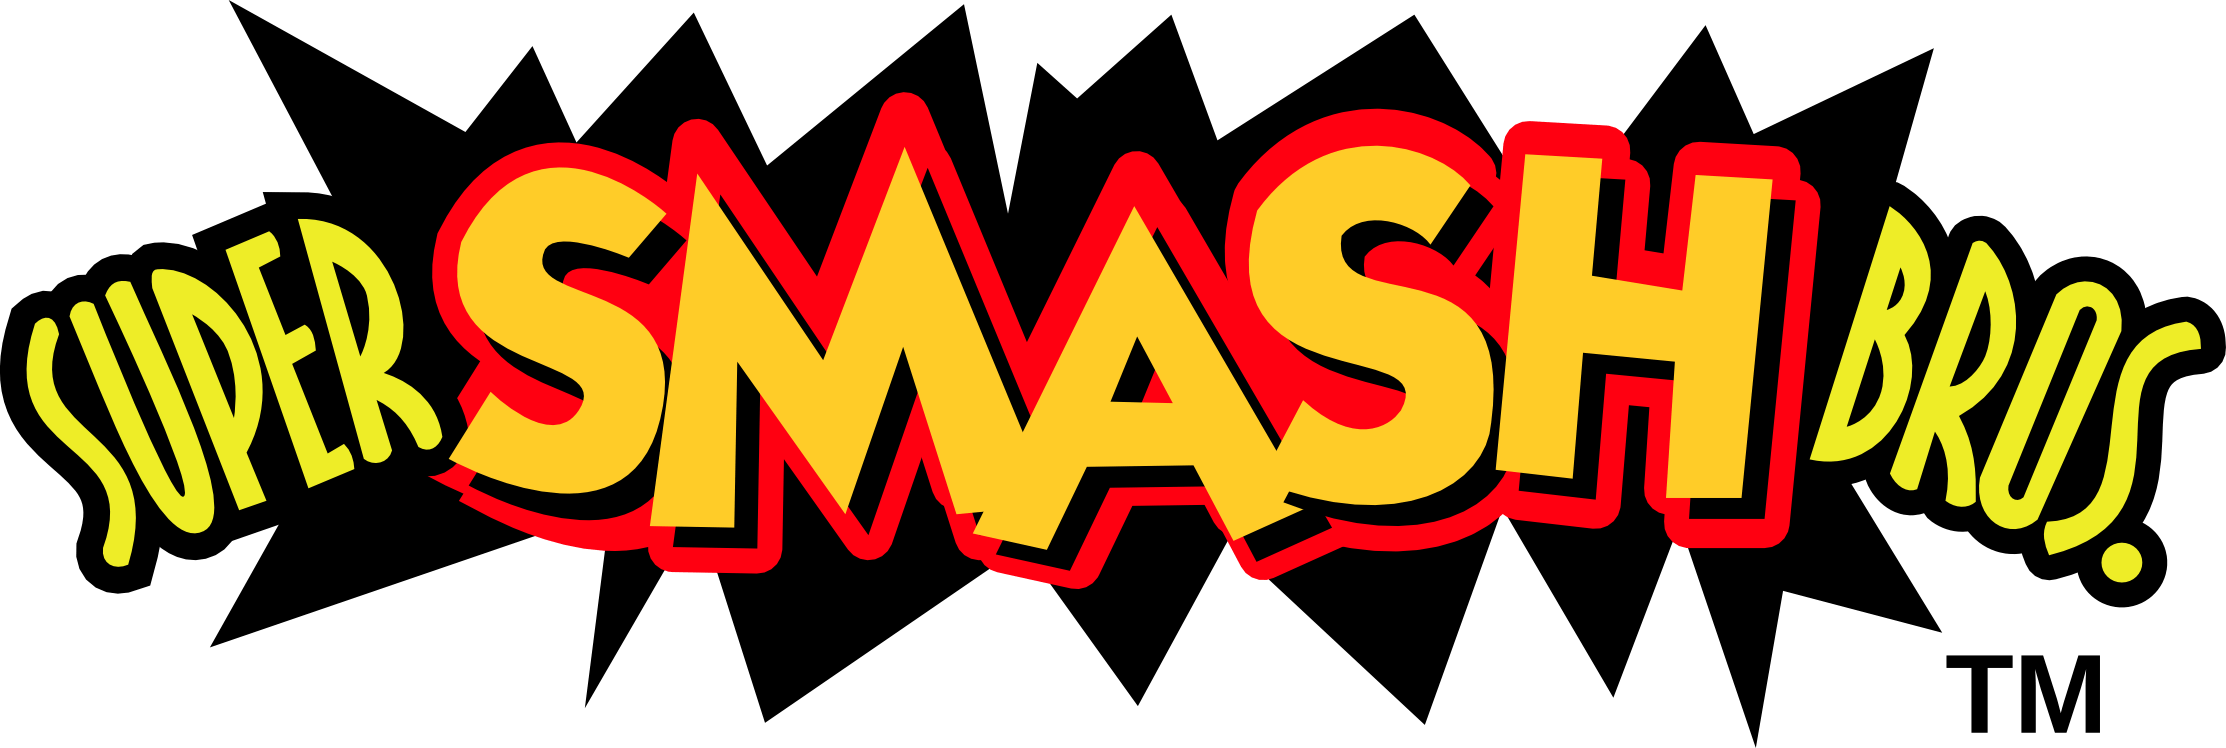 Melee Logo - Super Smash Bros. (N Melee) logos